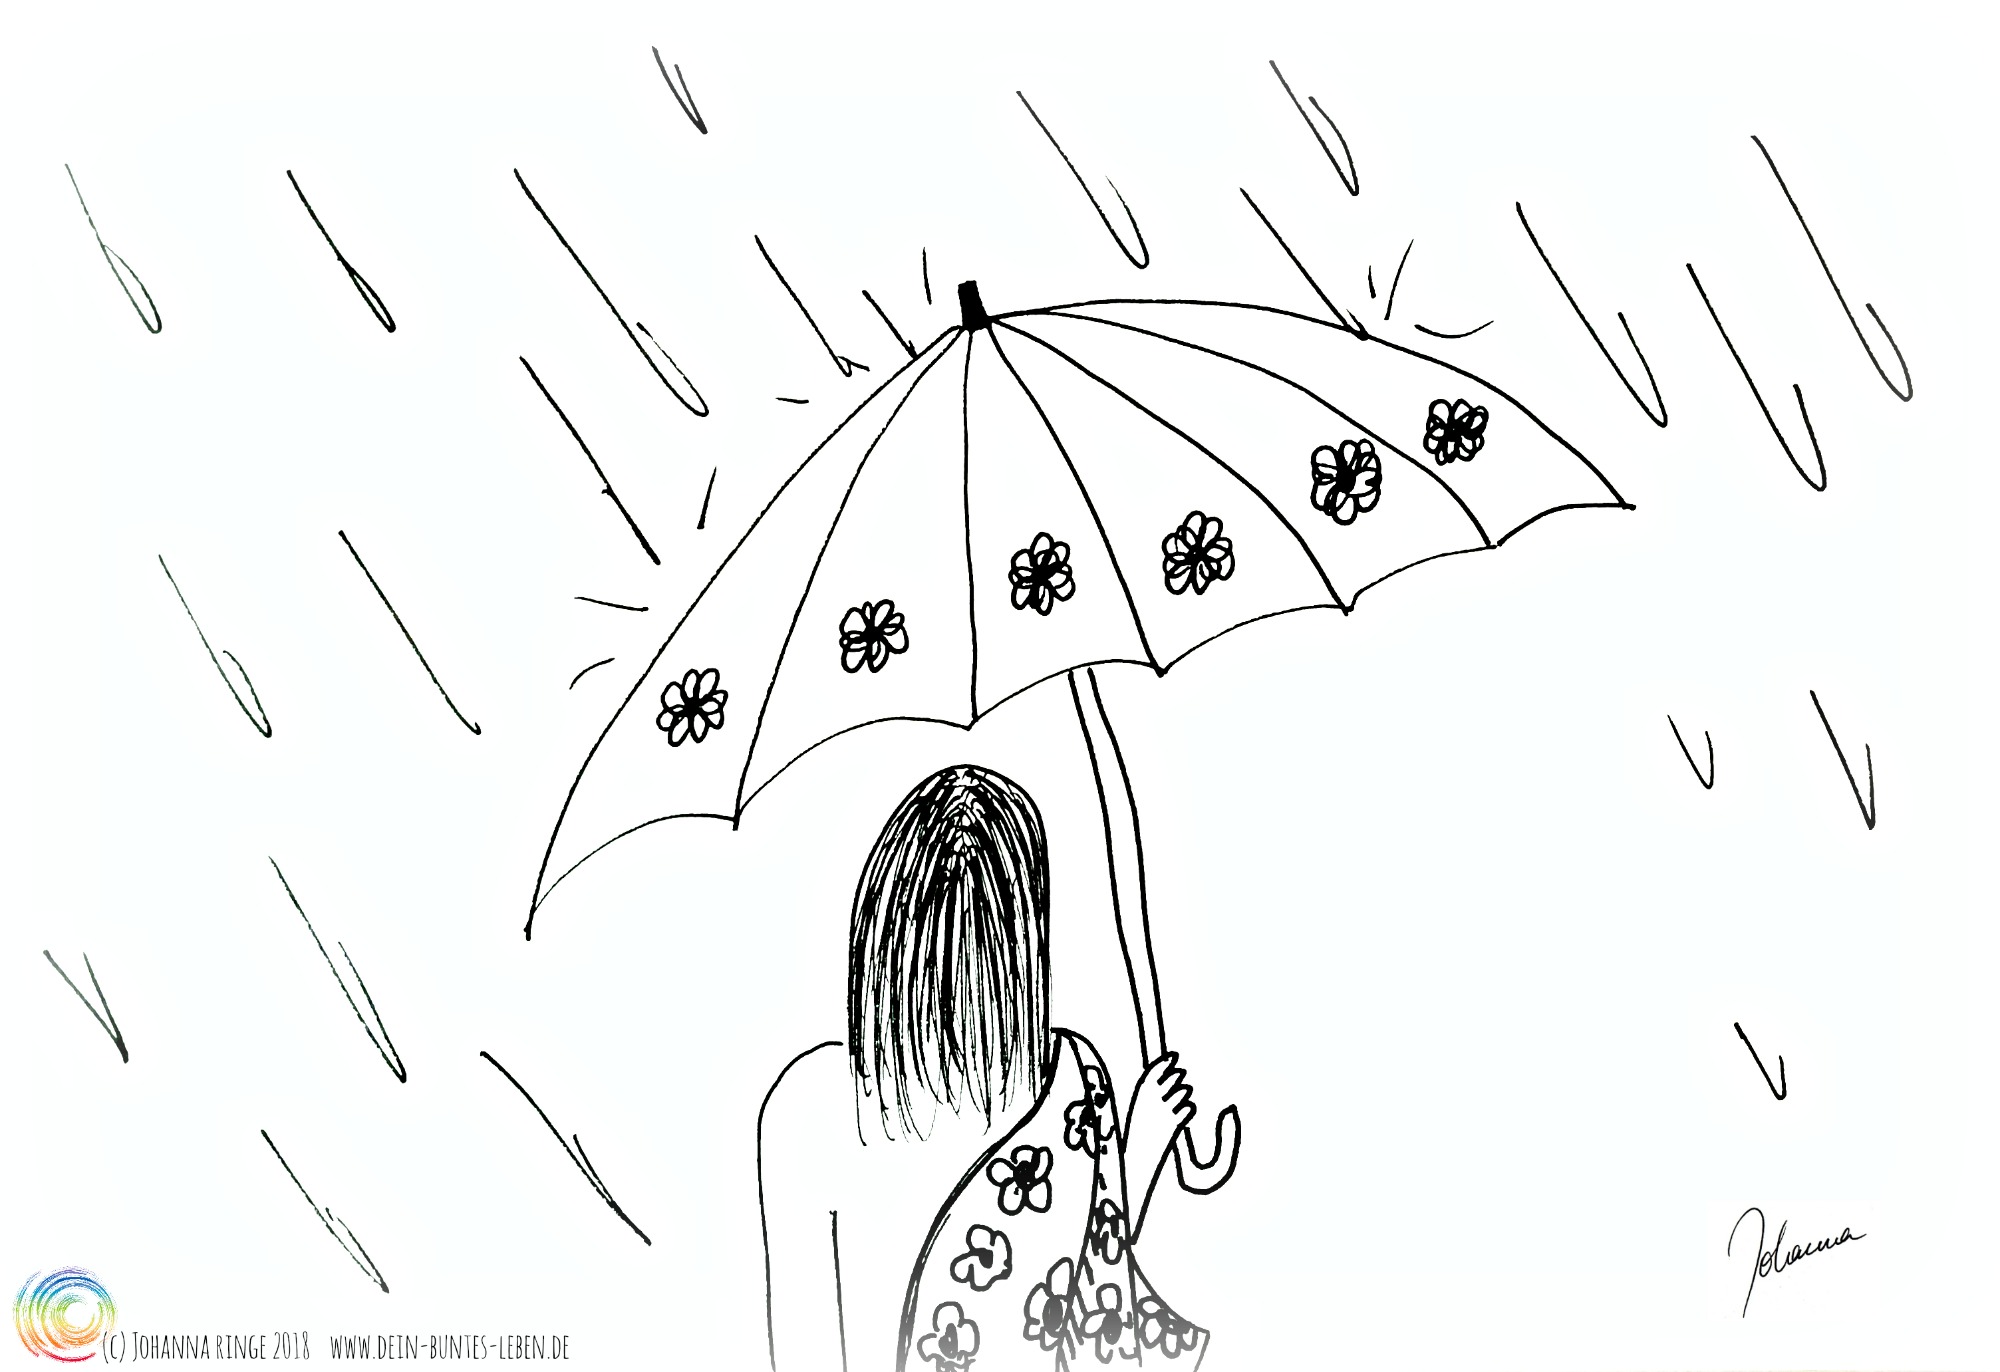 Selbstfürsorge kann manchmal einfach ein Regenschirm sein. Zeichnung von Person mit Schirm im Regen. (c) Johanna Ringe 2018 www.dein-buntes-leben.de